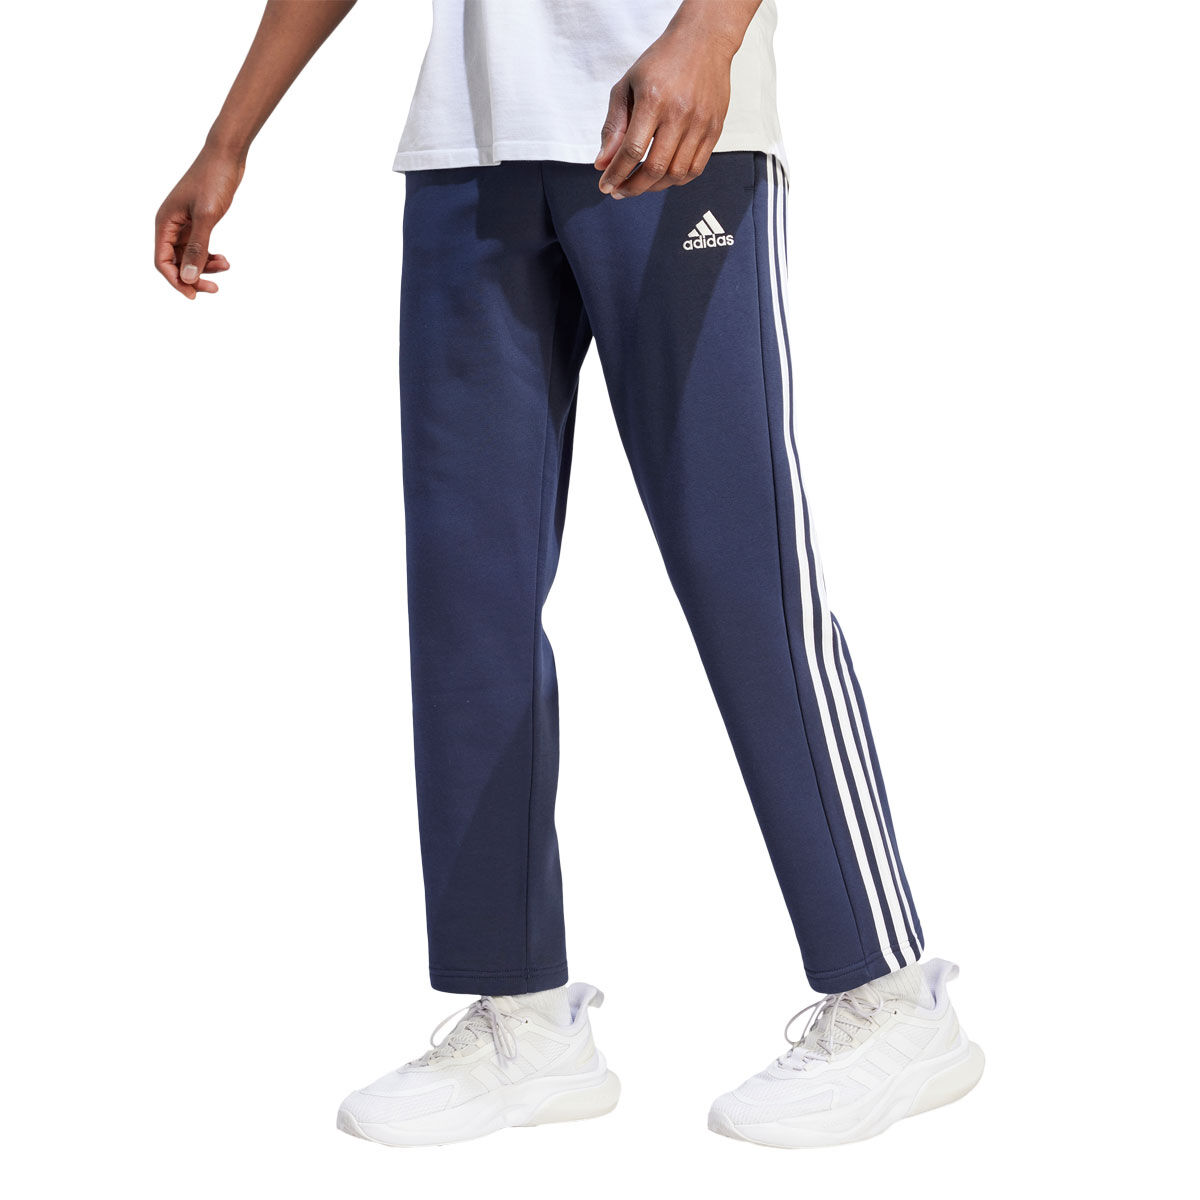 Adidas Originals Men's Classic Track Pants 3 Stripes | Adidas originals  mens, Sporty look, Adidas originals